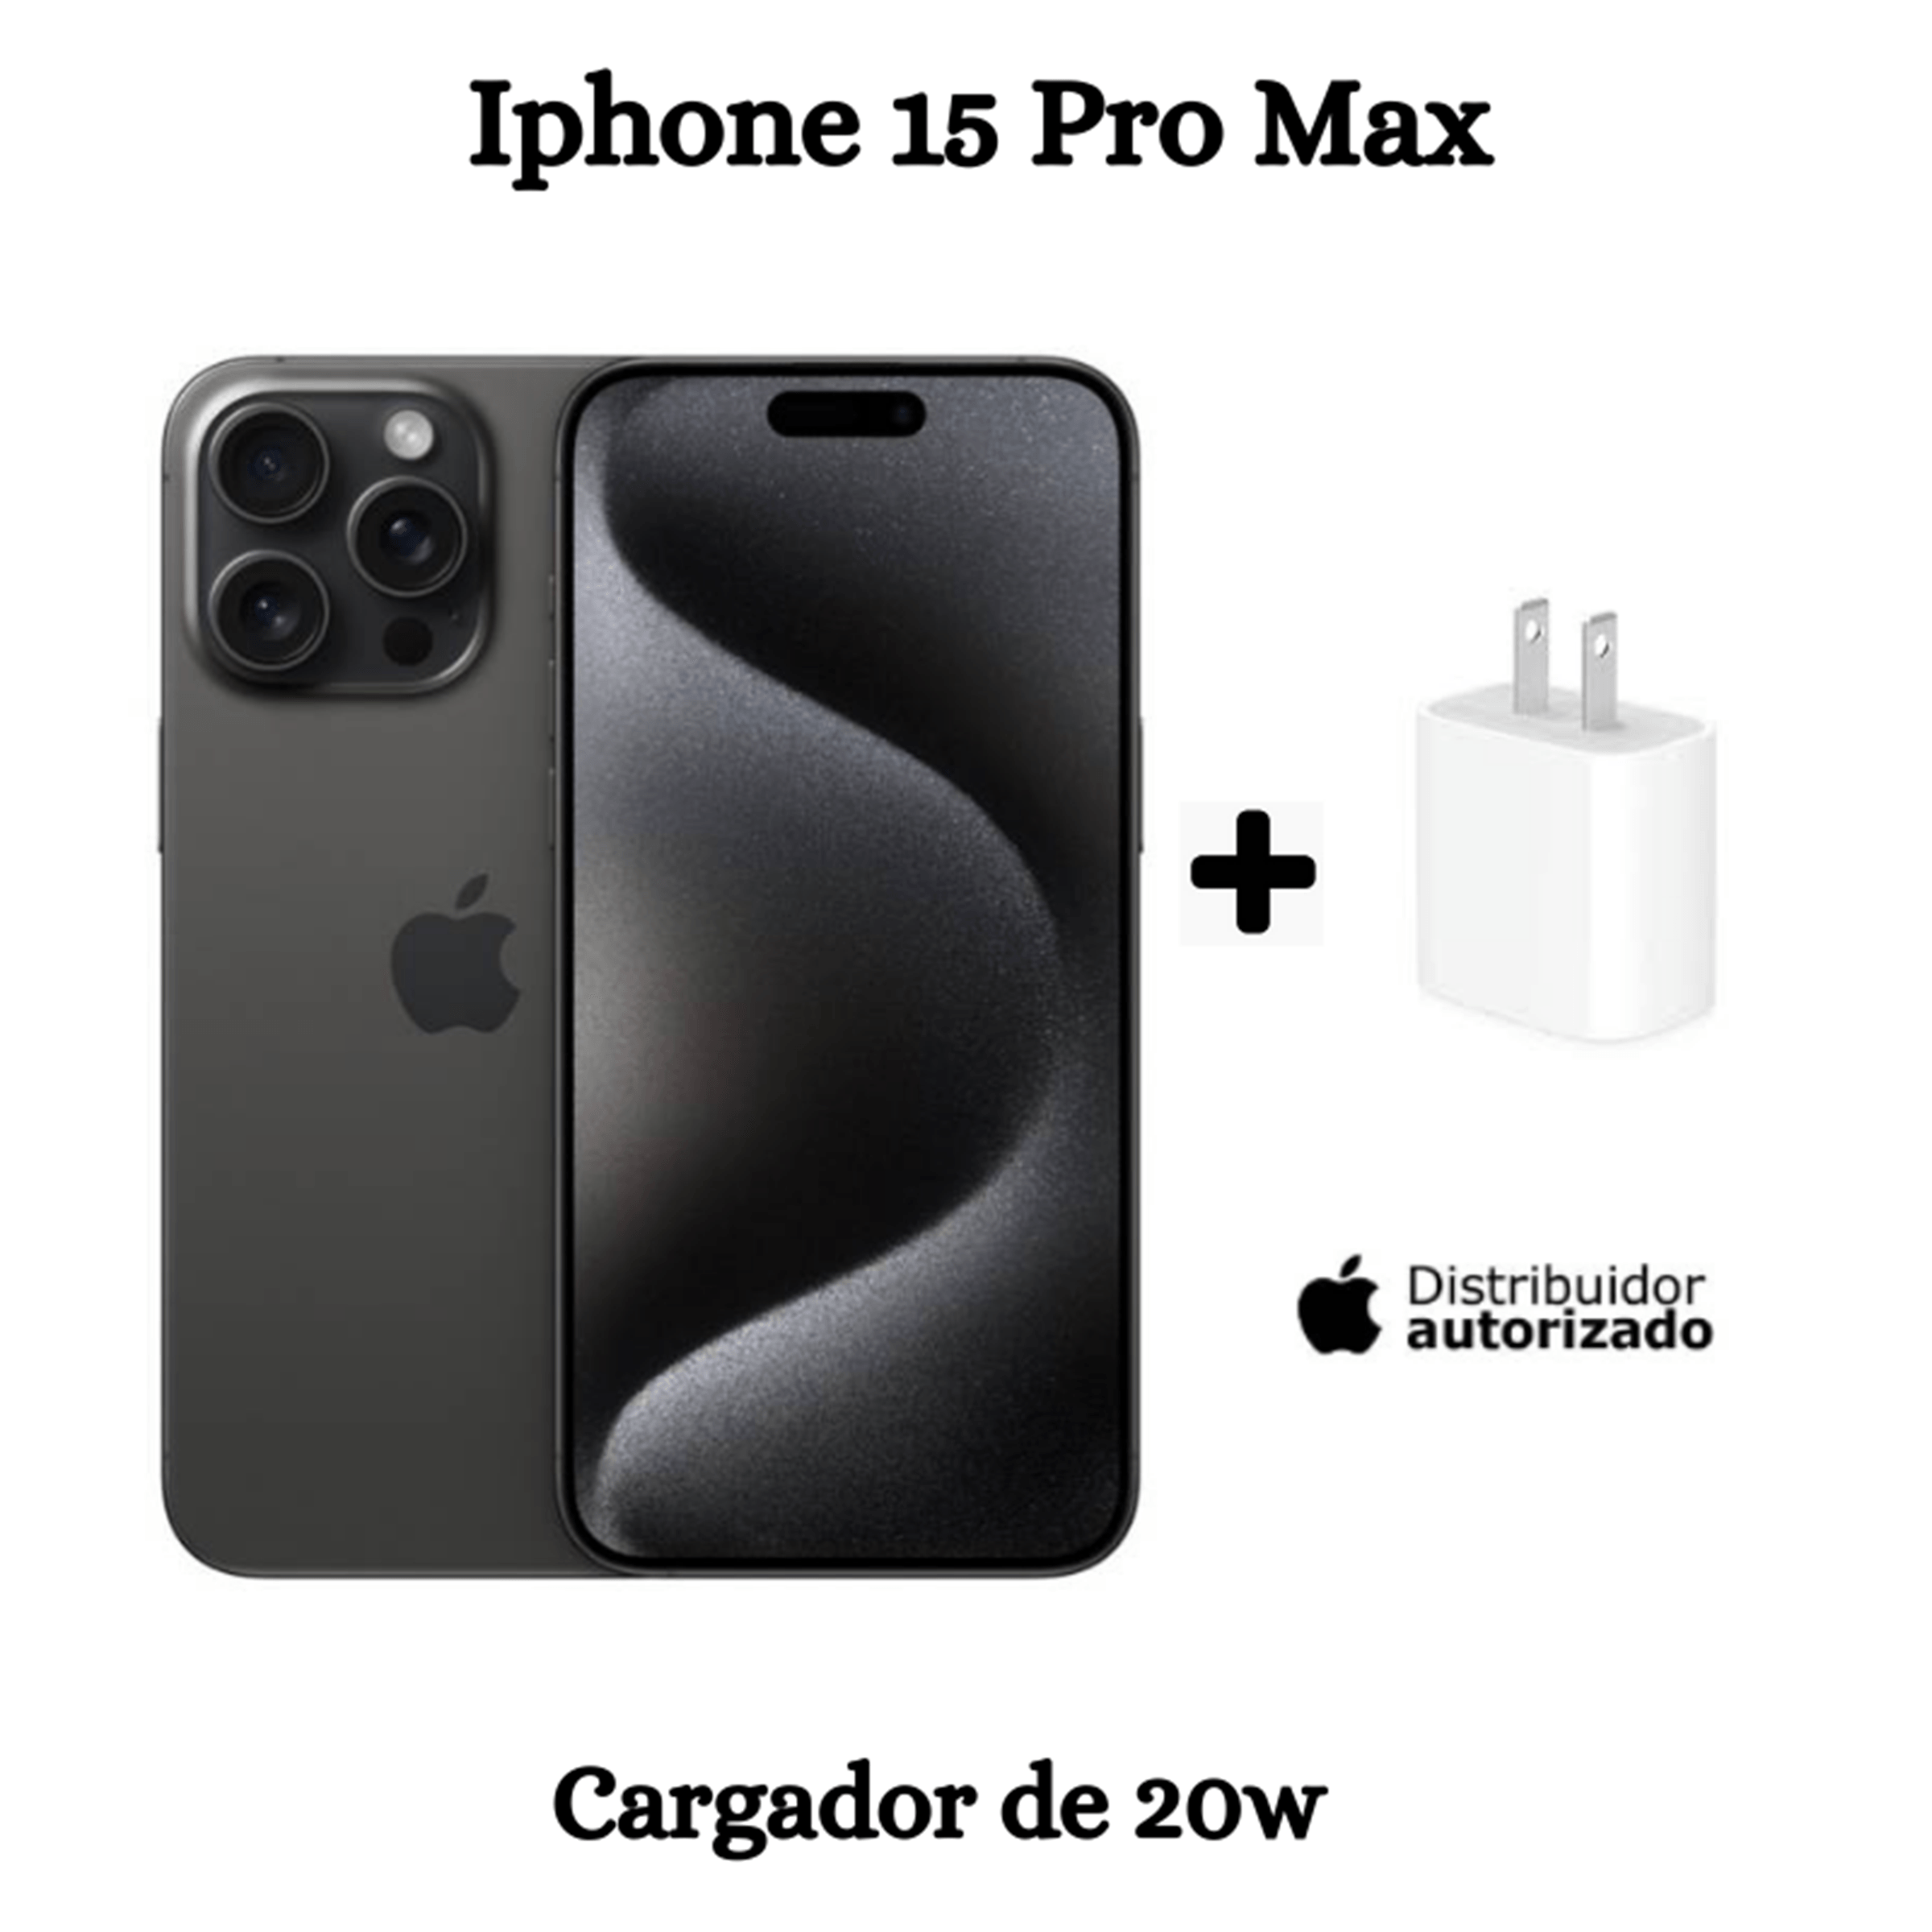 iPhone 15 Pro Max 256GB + Cargador - BLACK TITANIUM